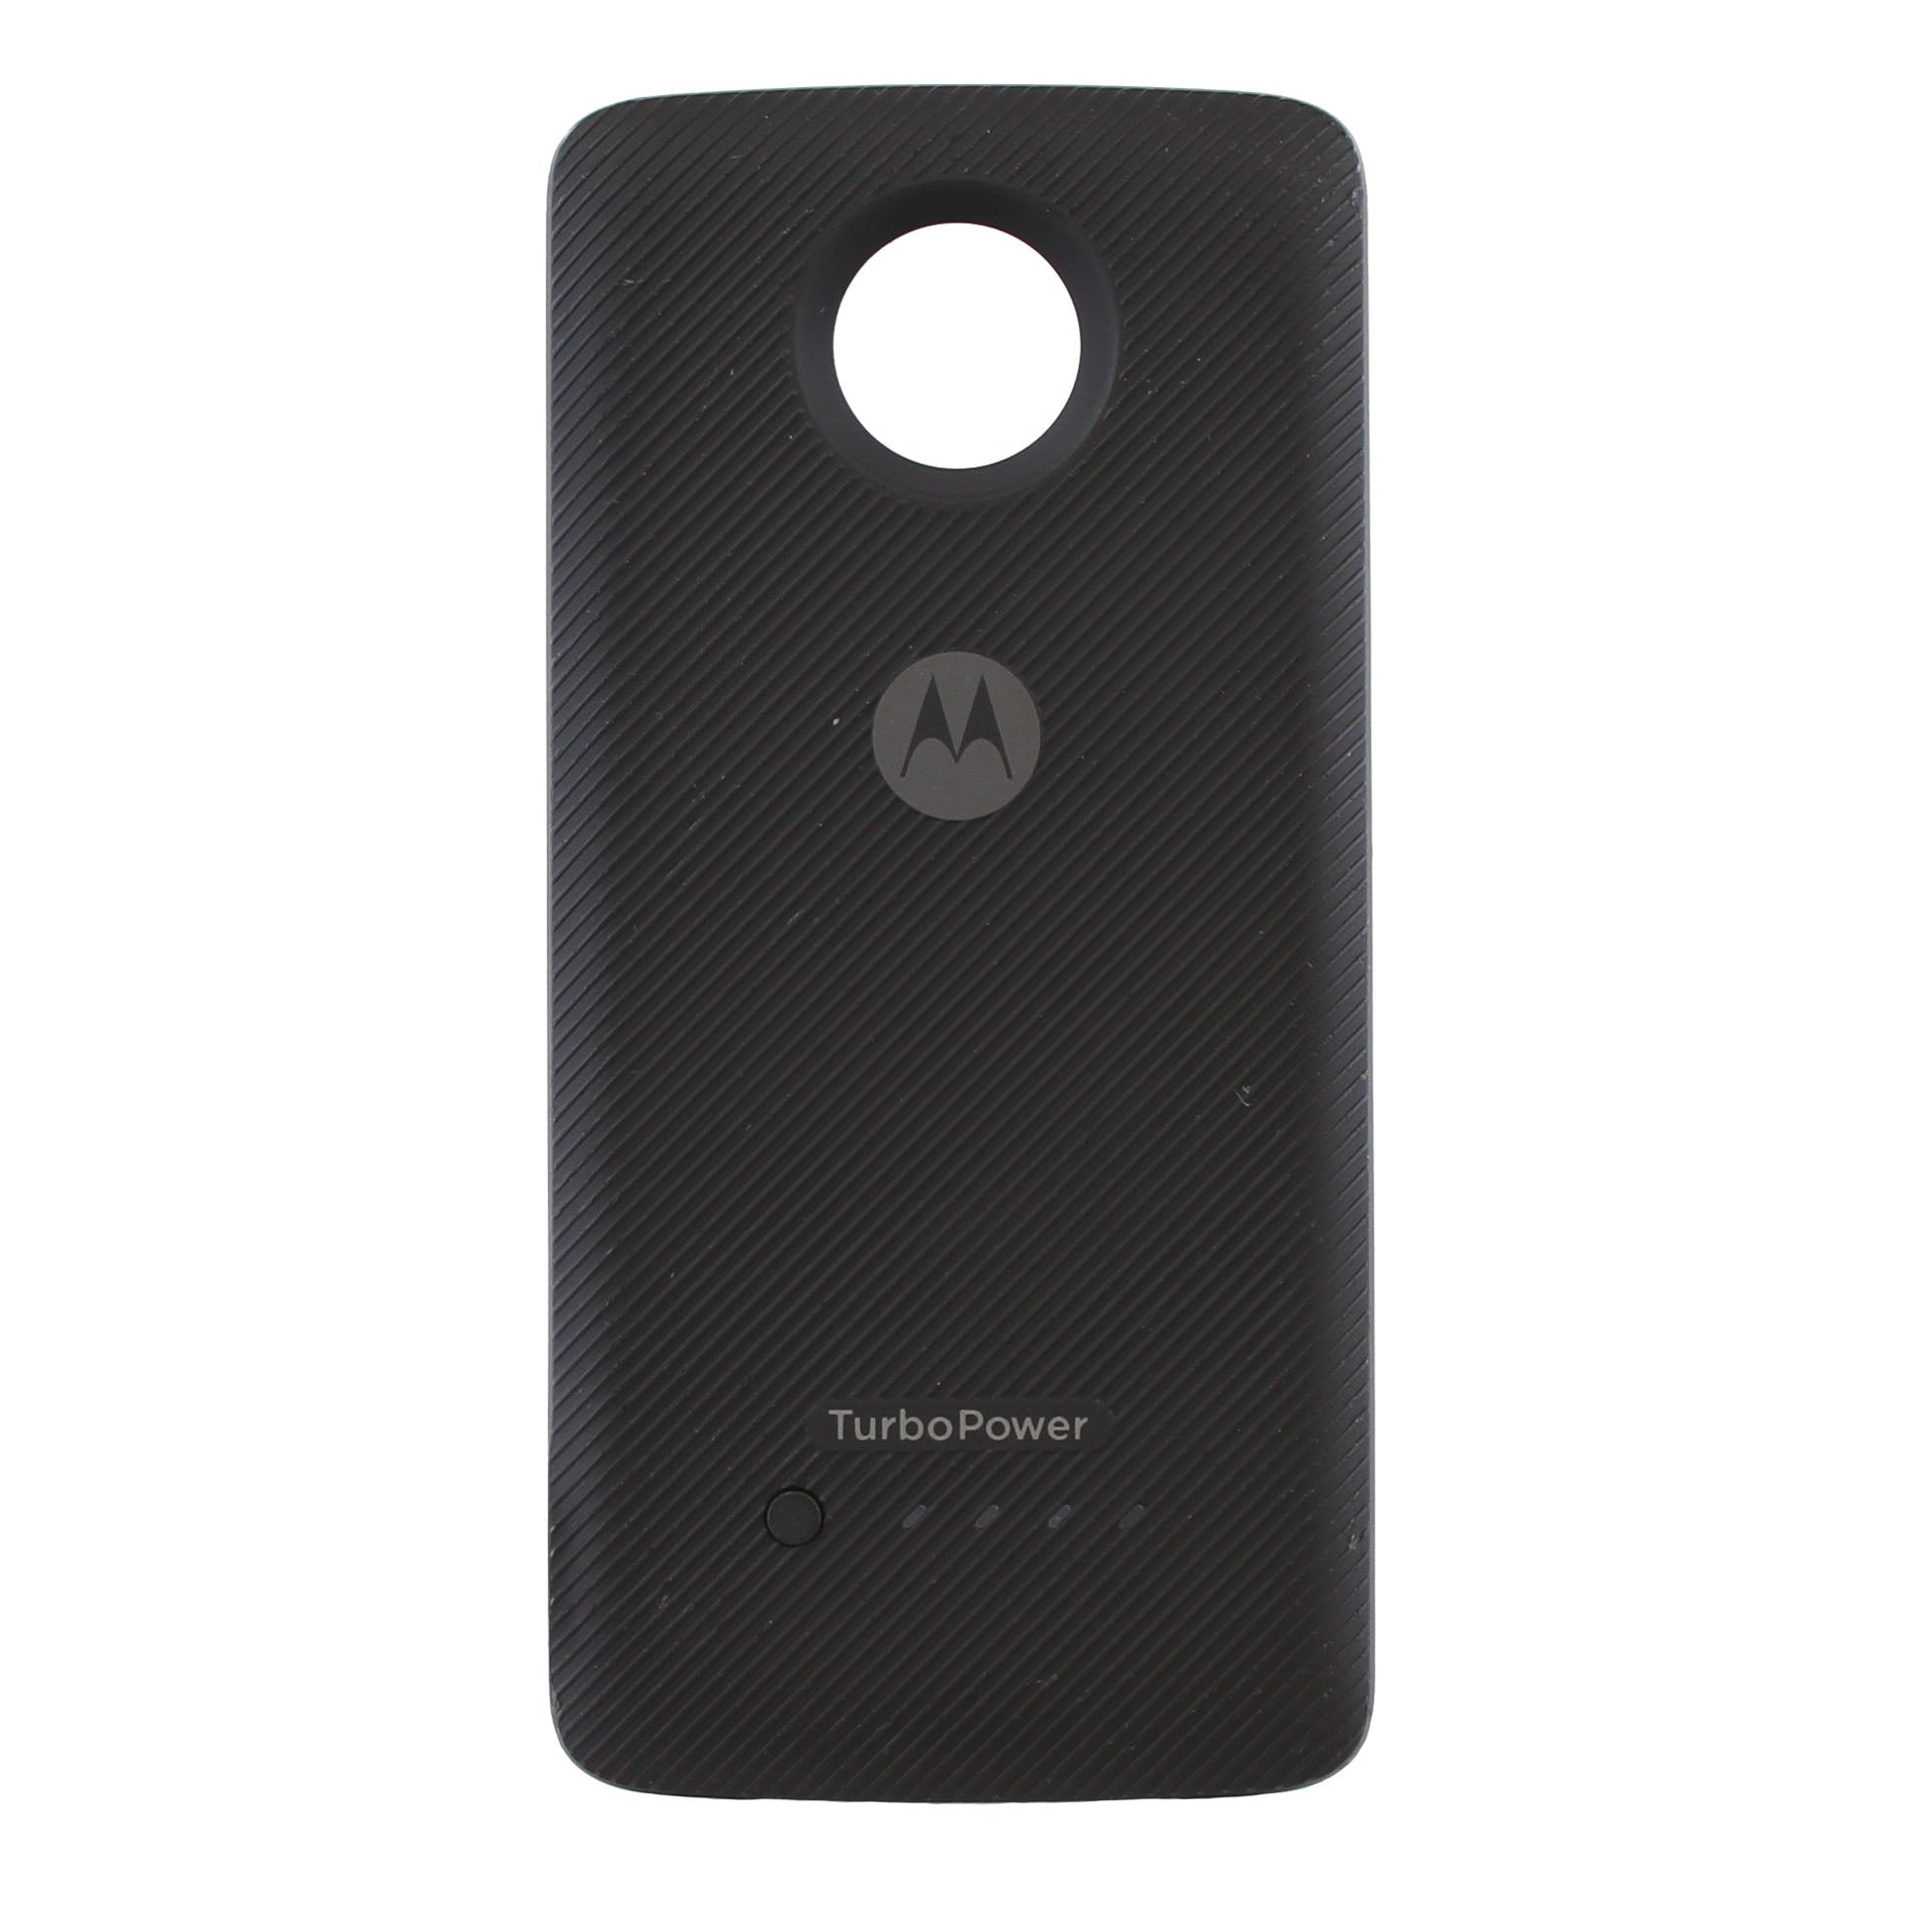 Motorola Moto Mods Turbopower Pack 3490mah - Black (Certified Refurbished)